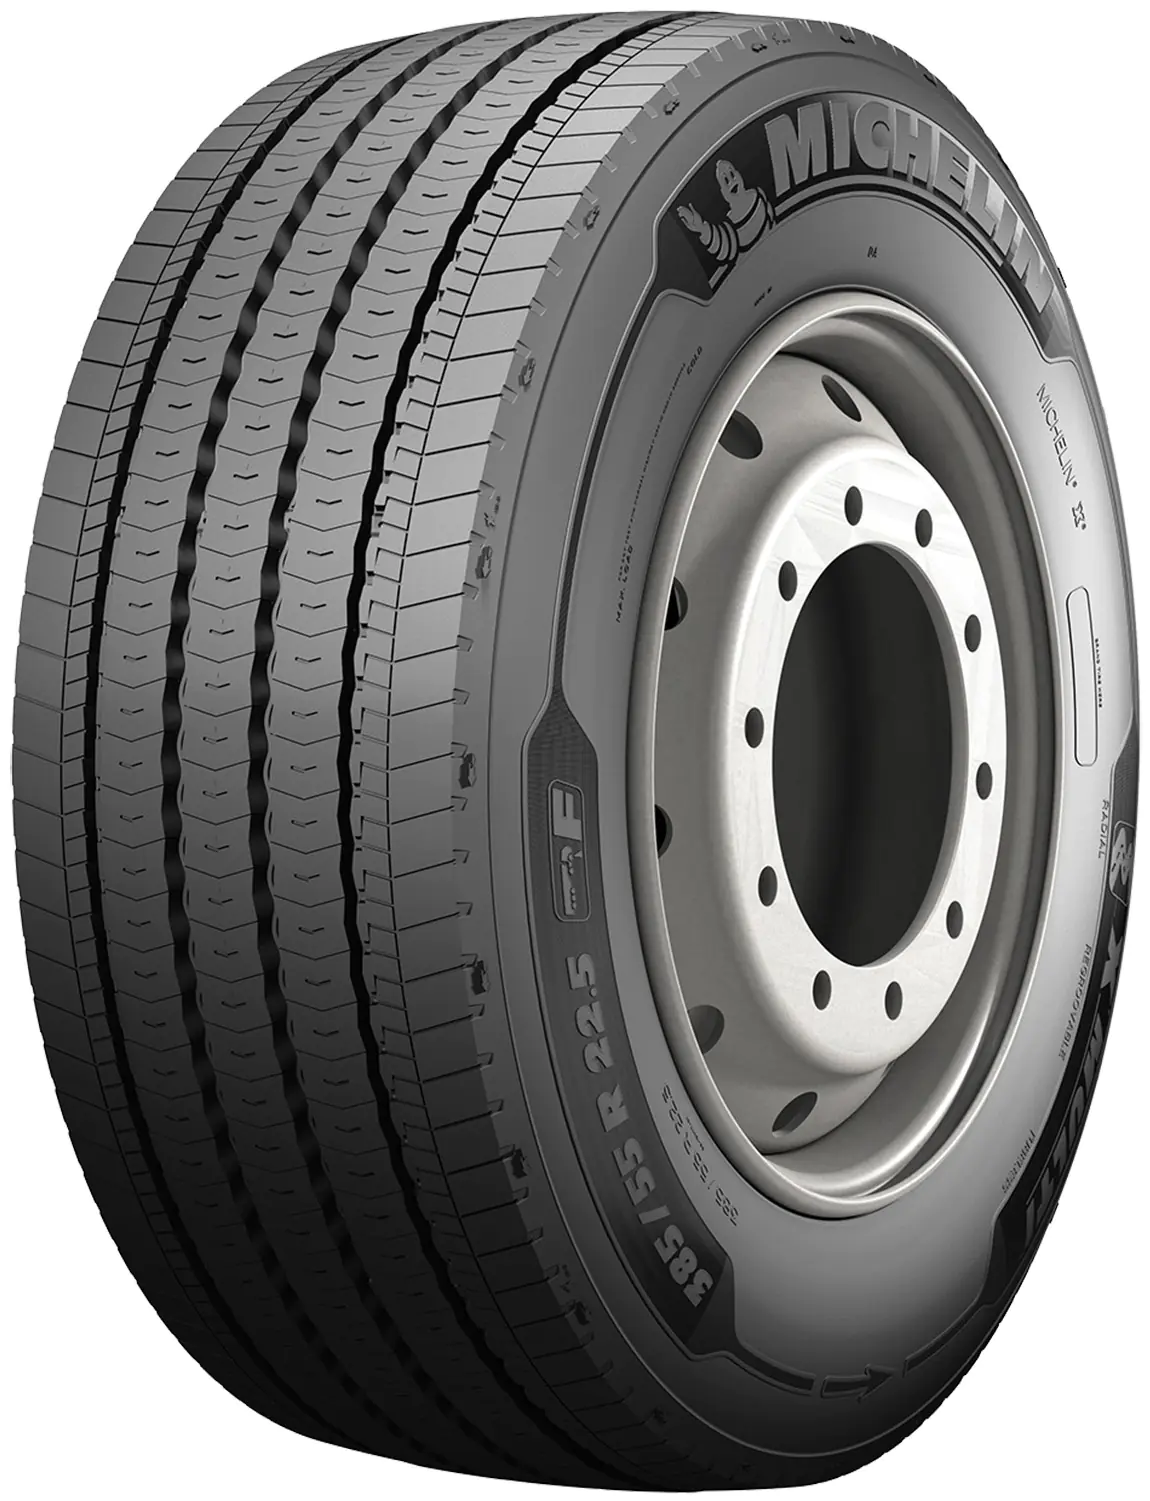 Michelin Michelin 385/55 R22.5 160K Xmultif pneumatici nuovi Estivo 